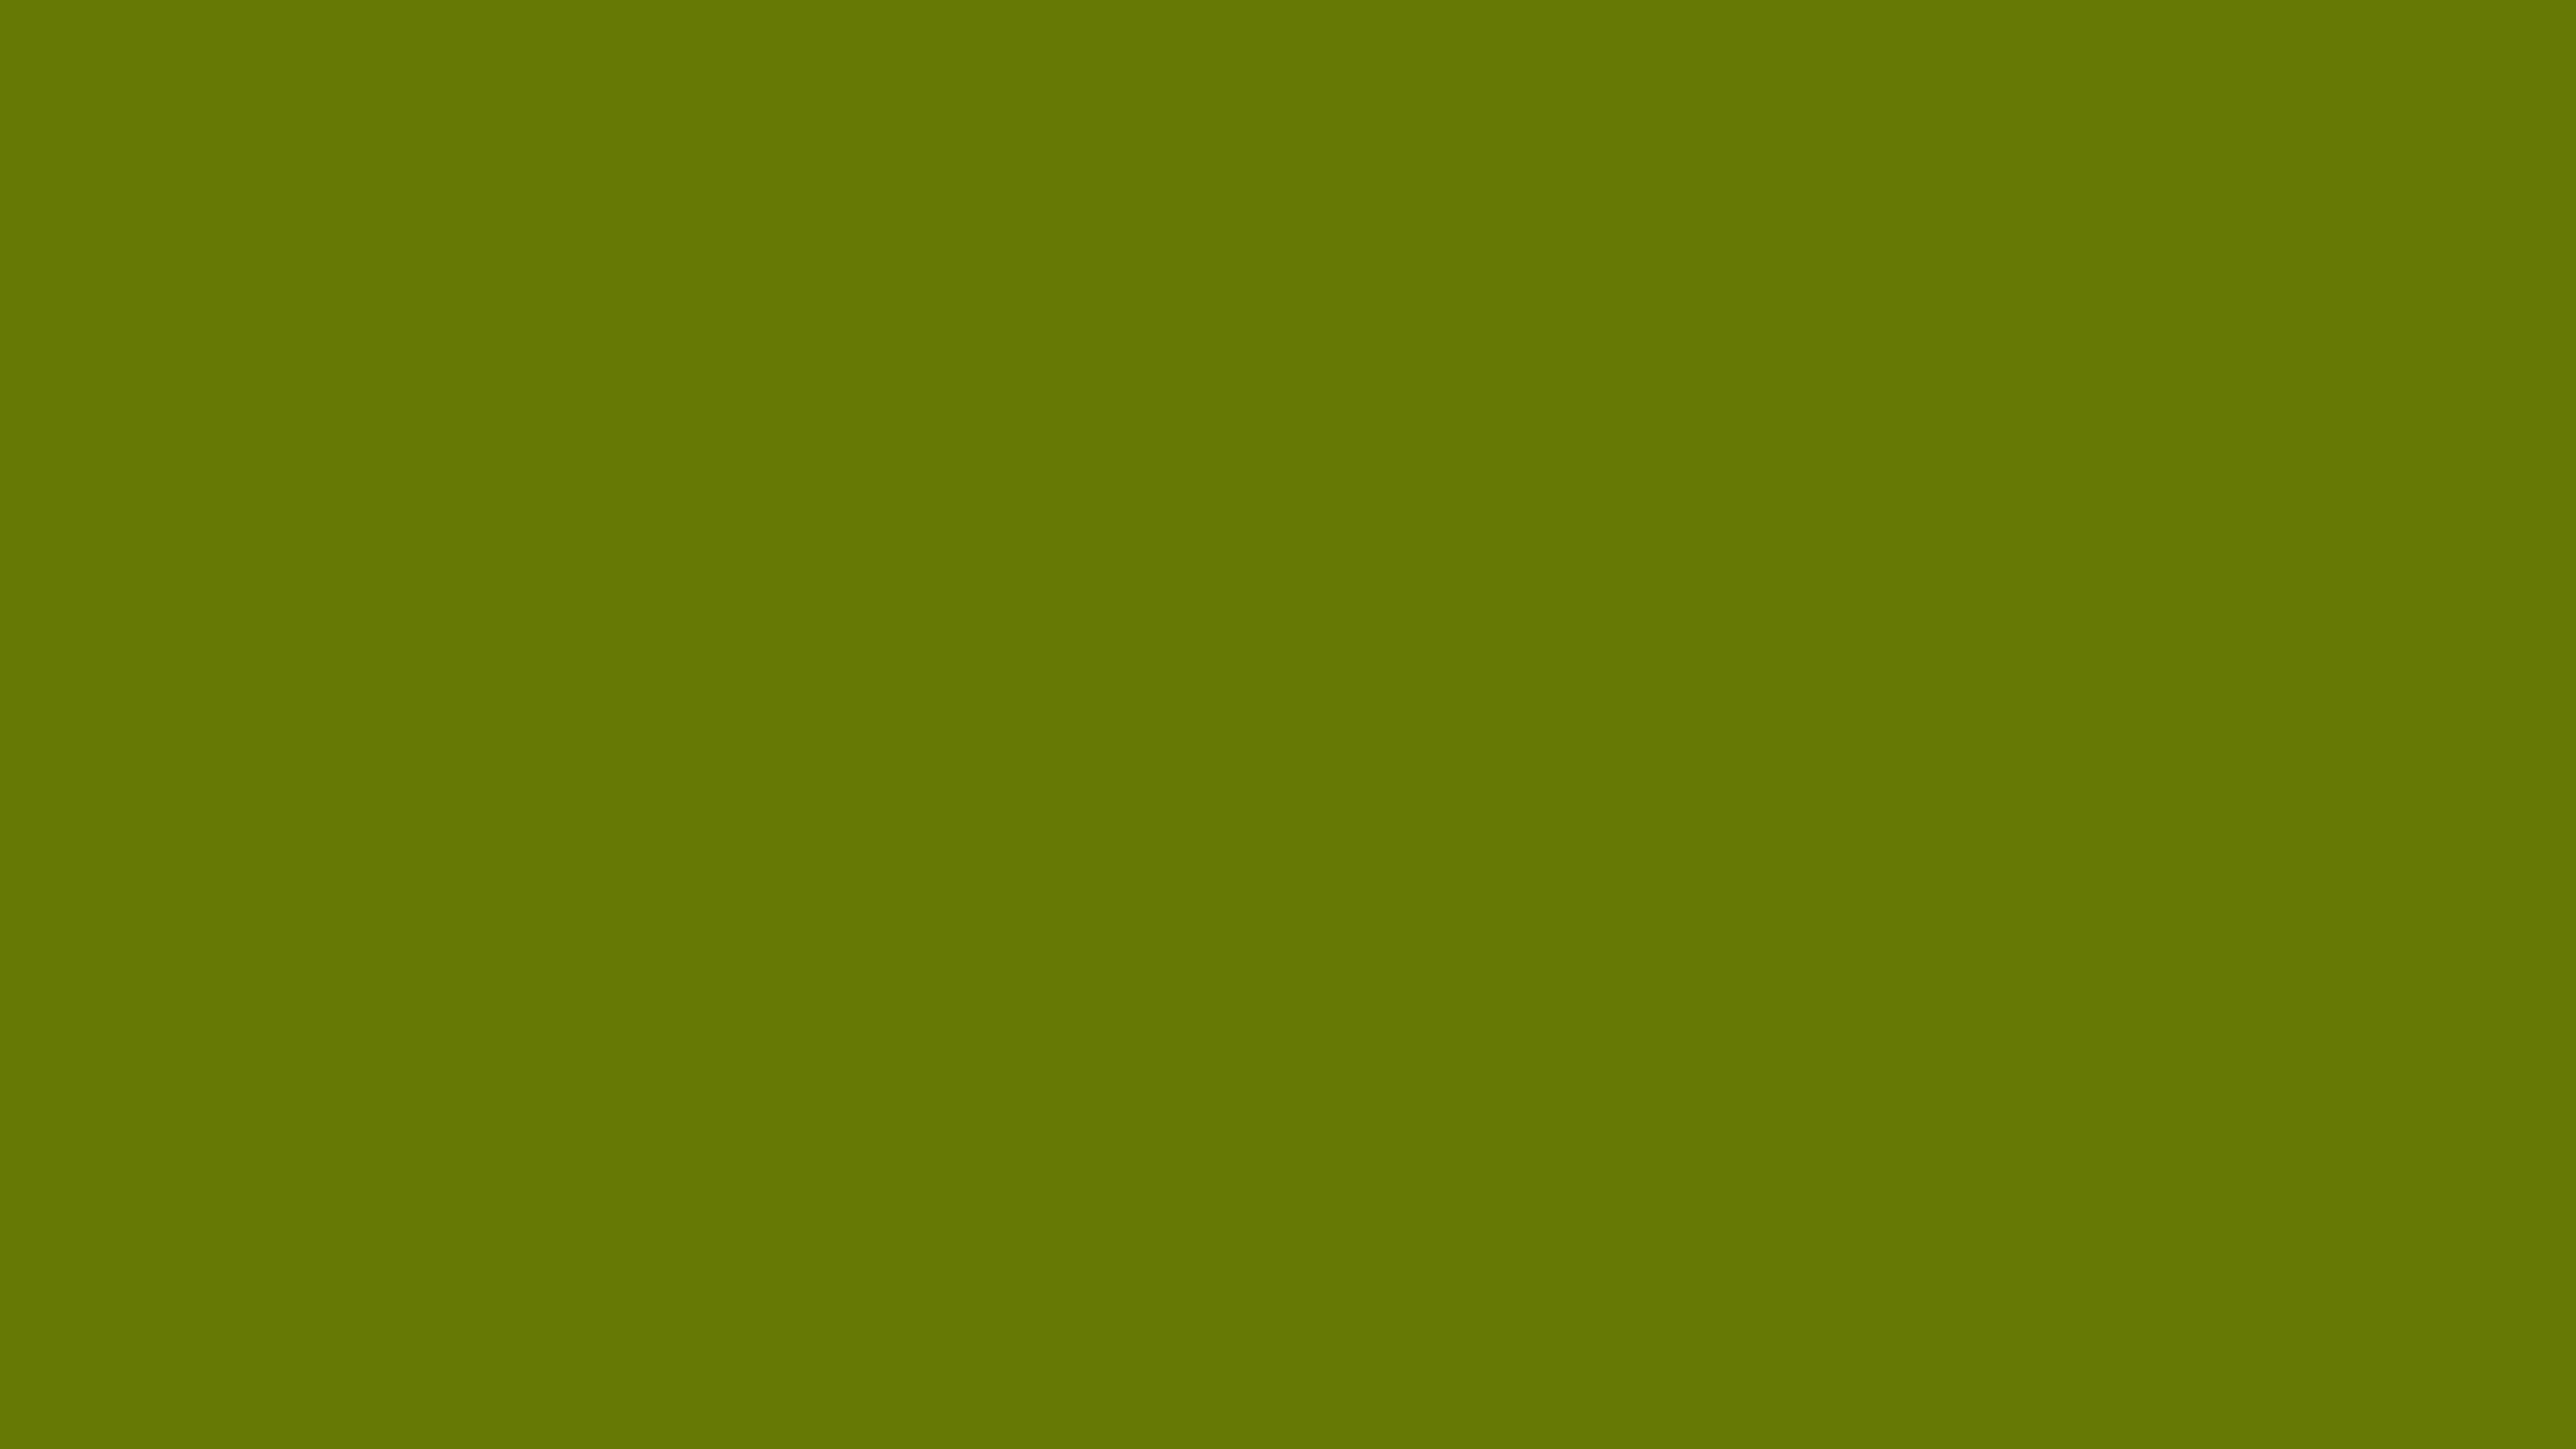 Olive Green Solid Color Background Image